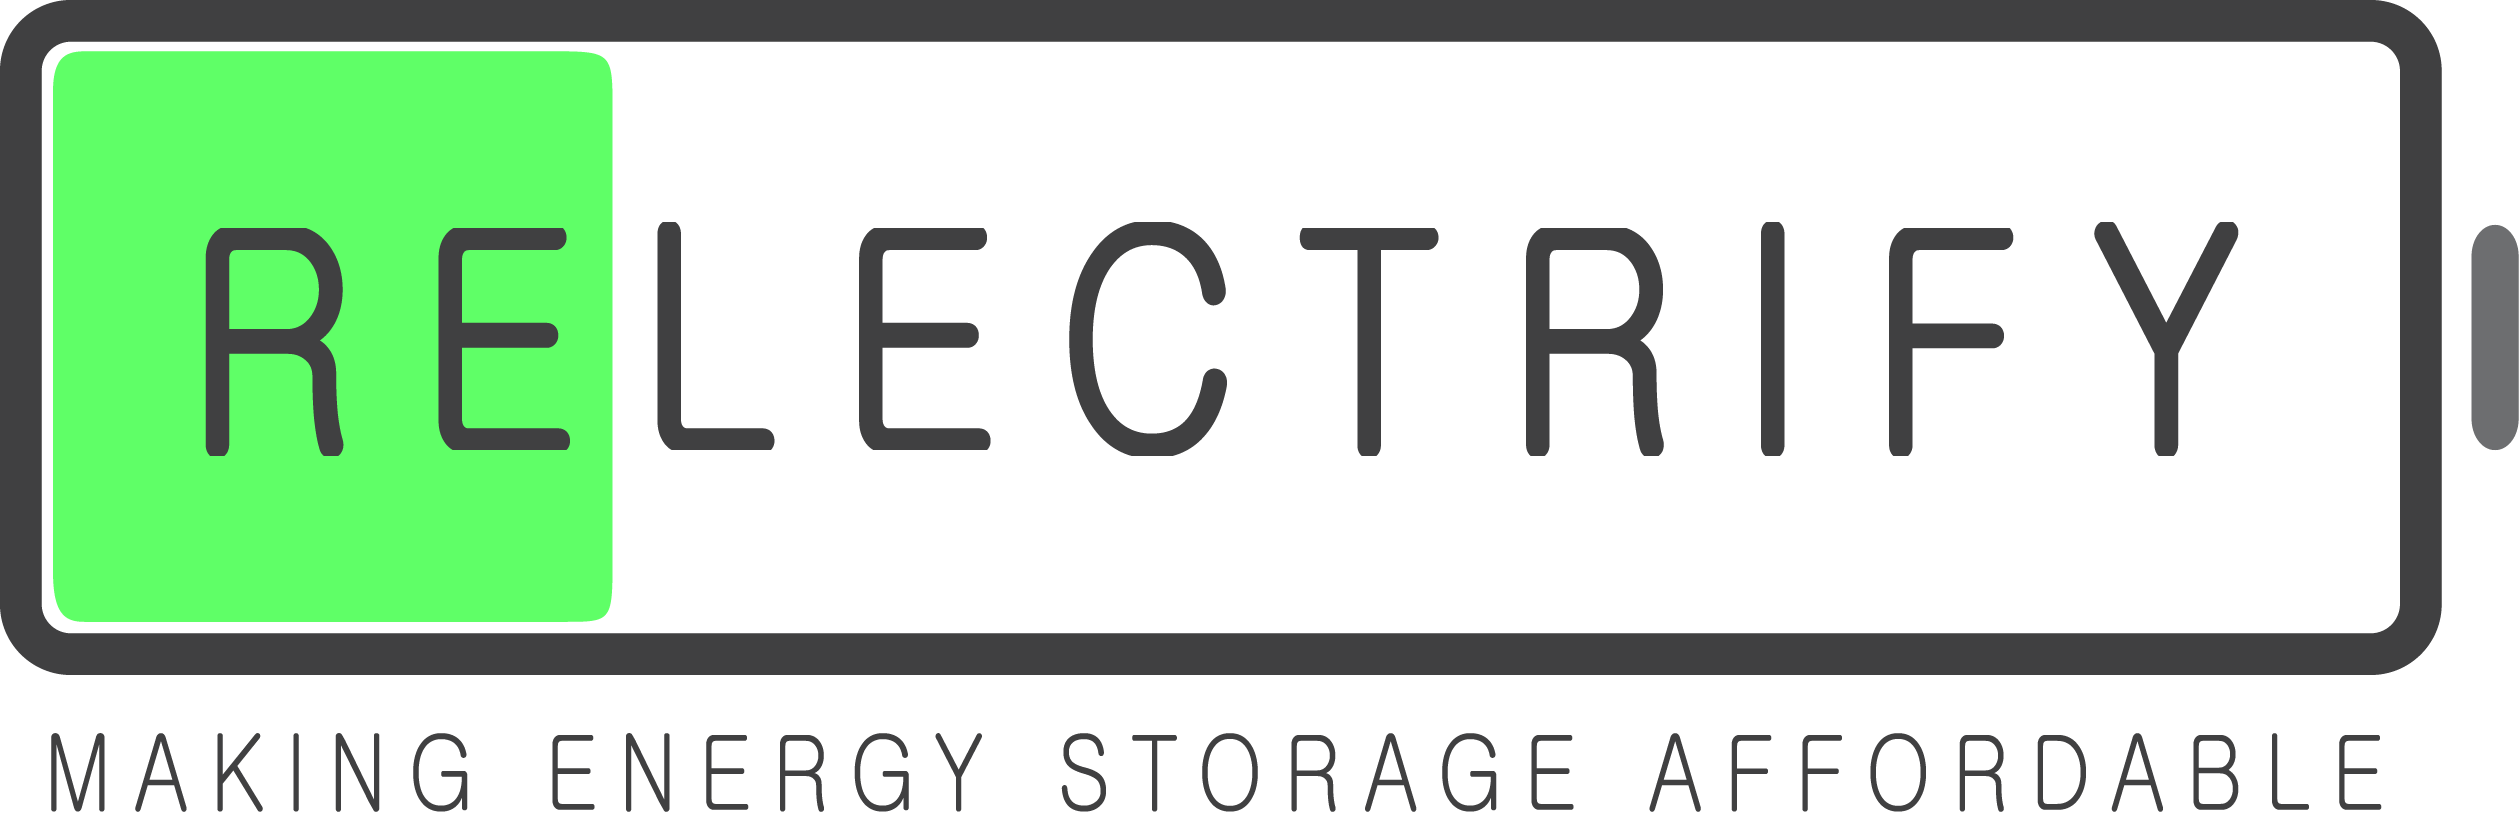 Relectrify logo with tagline